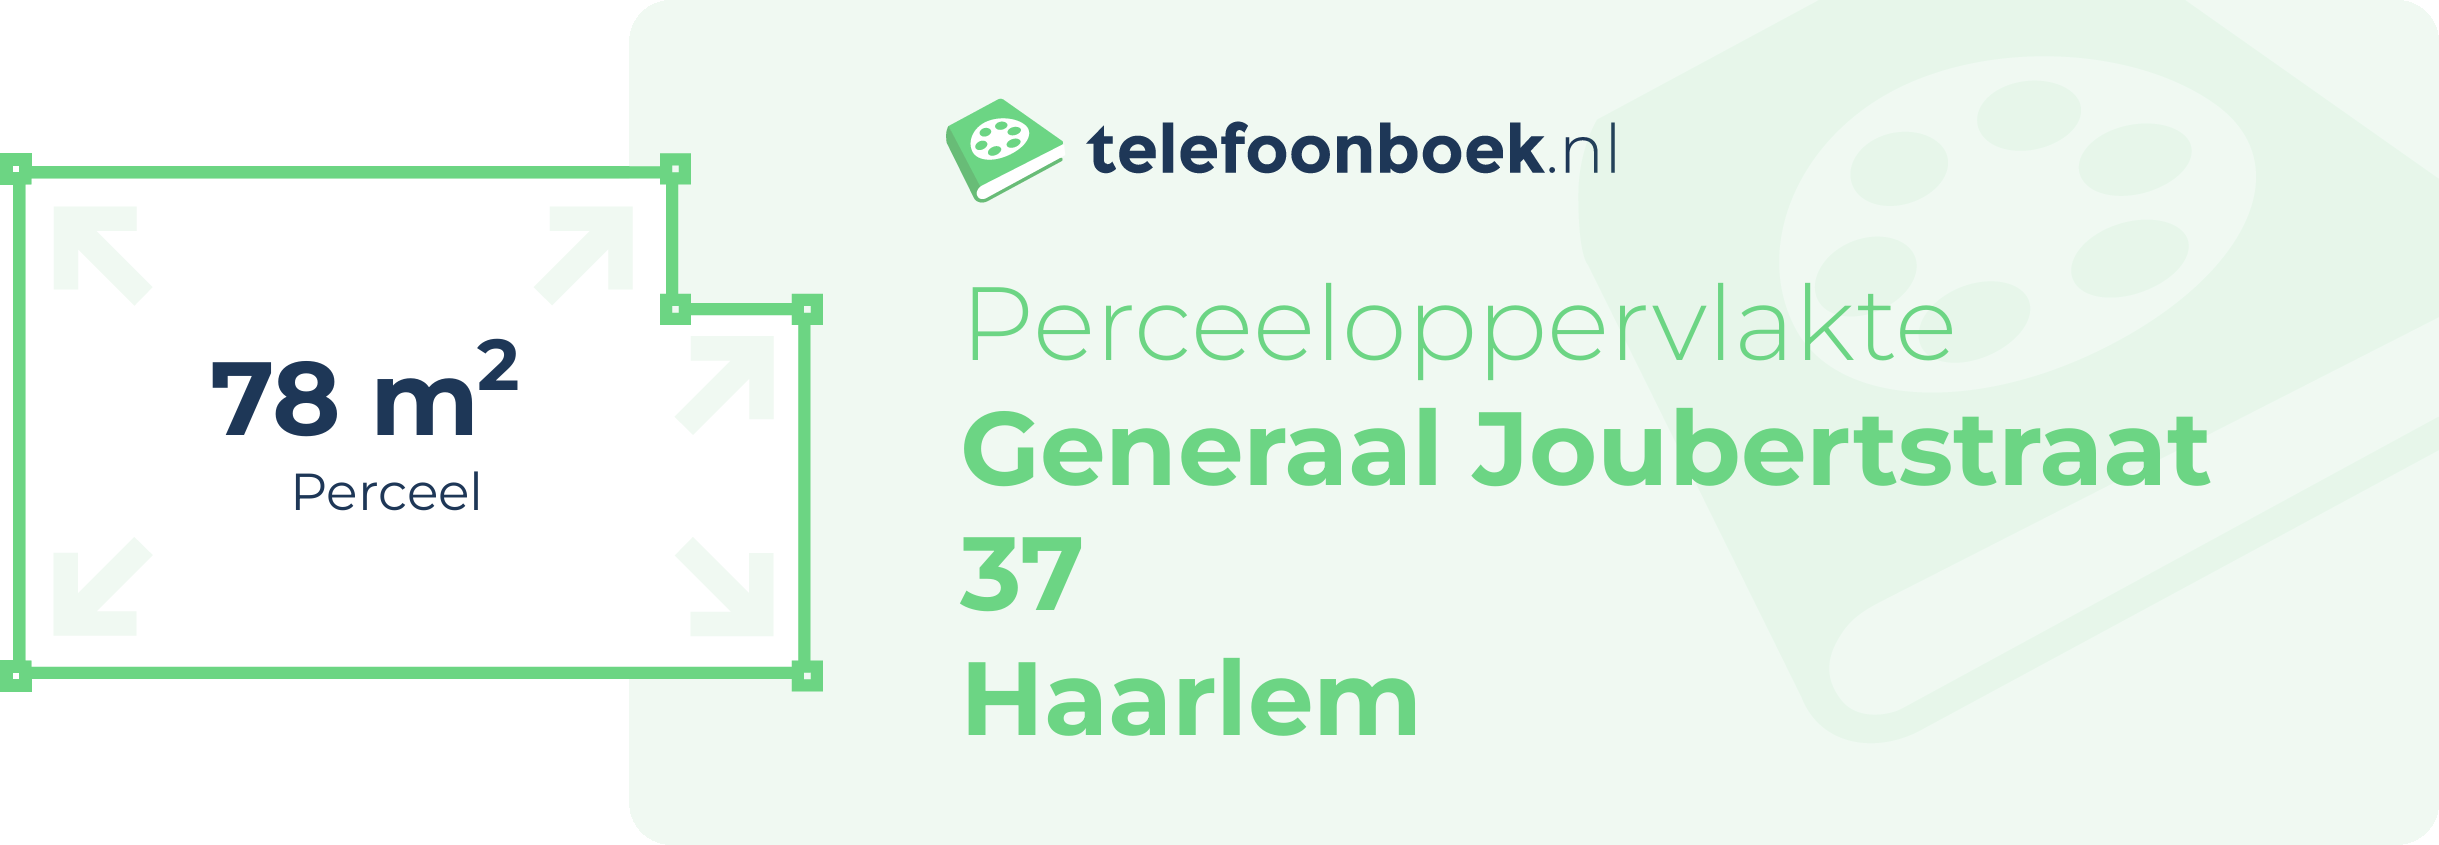 Perceeloppervlakte Generaal Joubertstraat 37 Haarlem